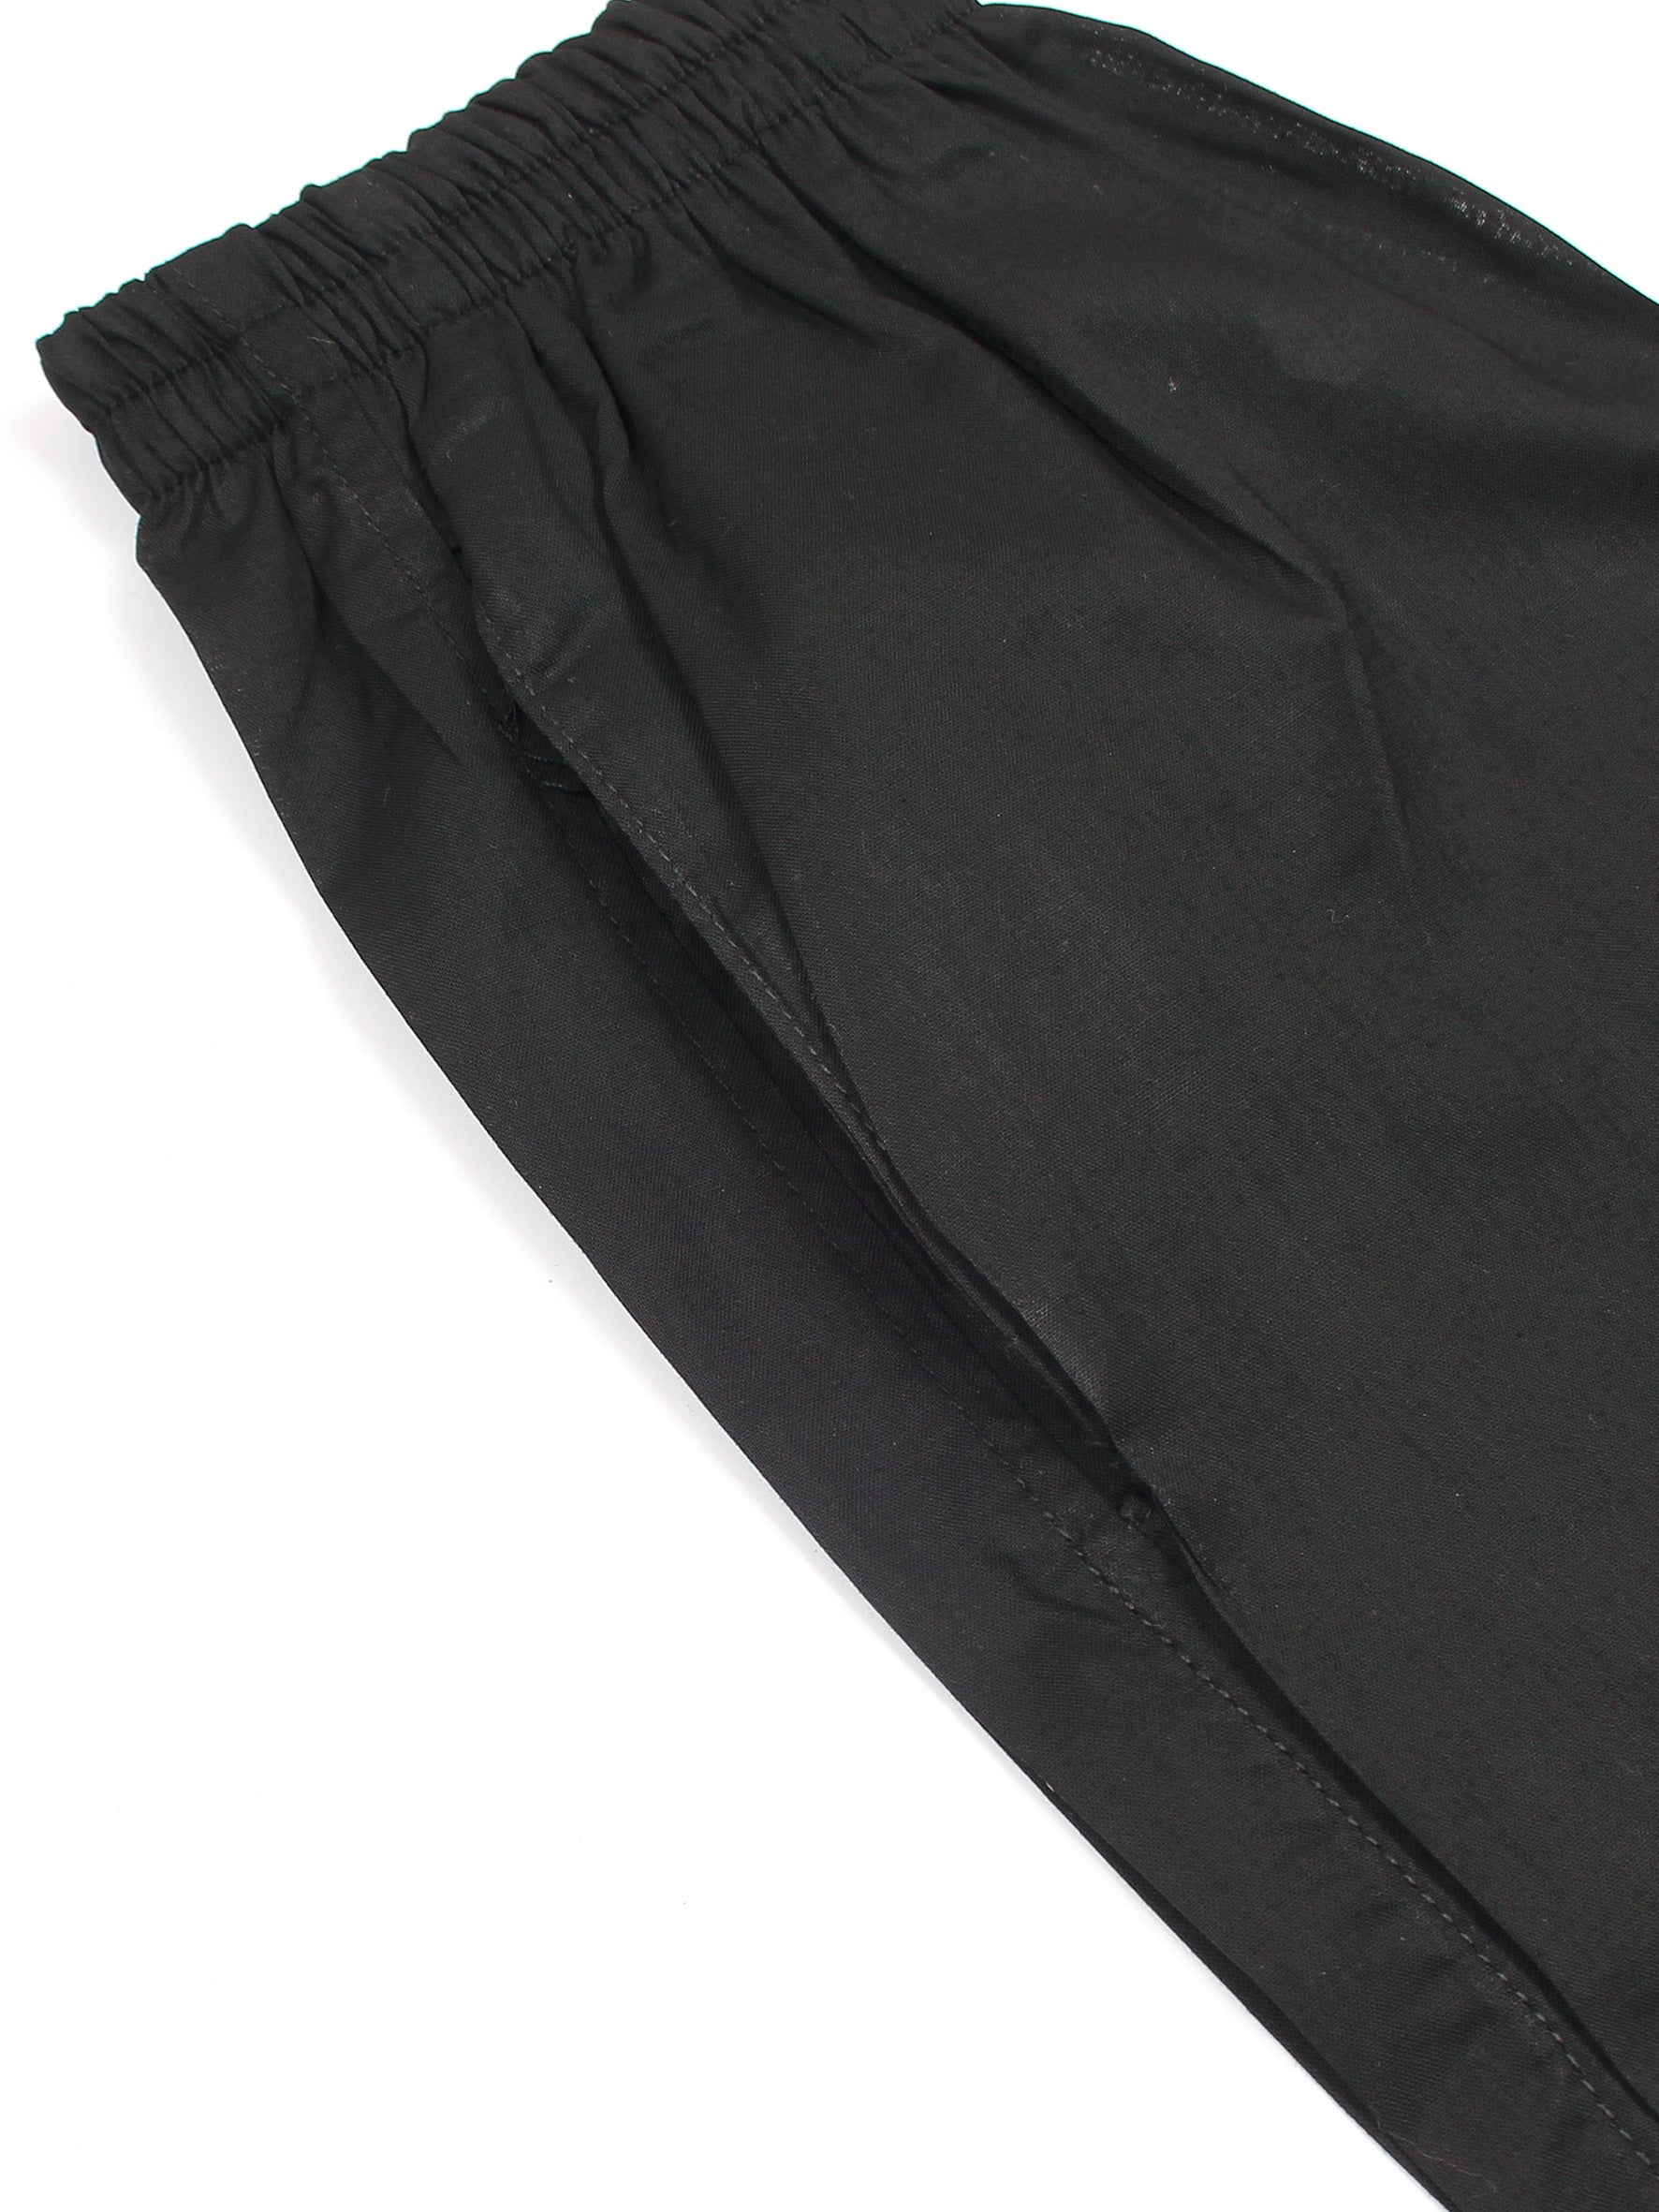 Boys Kurta Trouser Suit Set VB139-Black